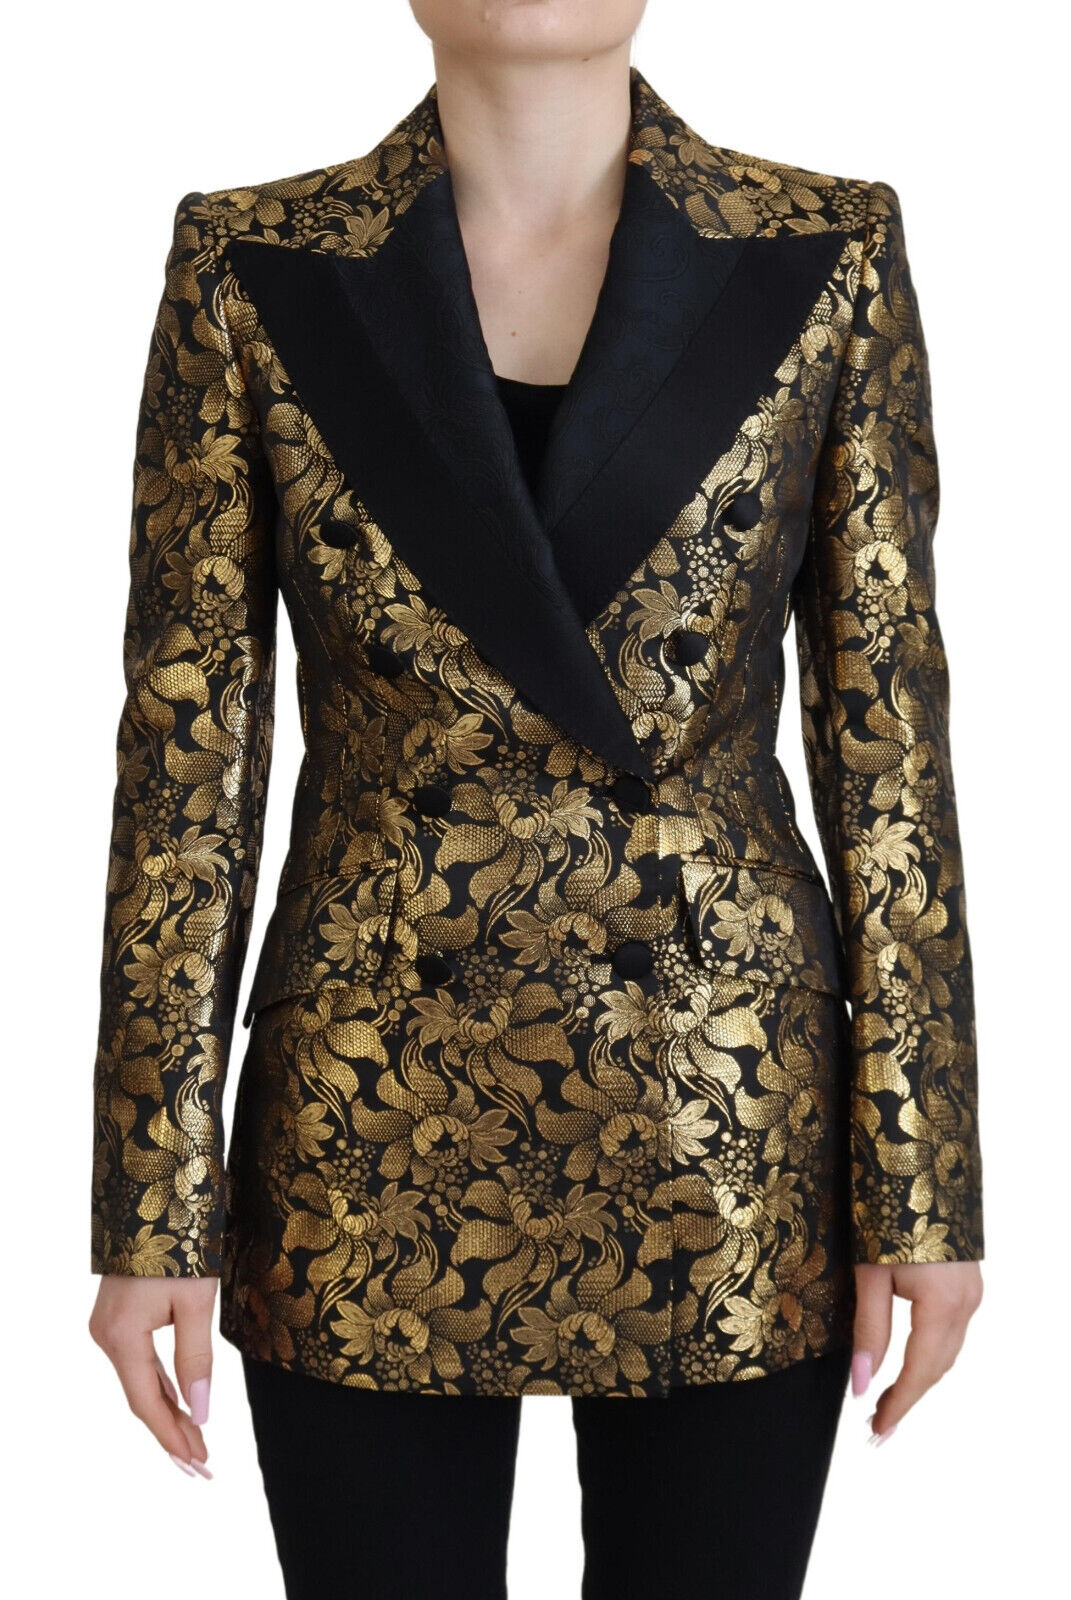 Elegant Black and Gold Floral Jacket